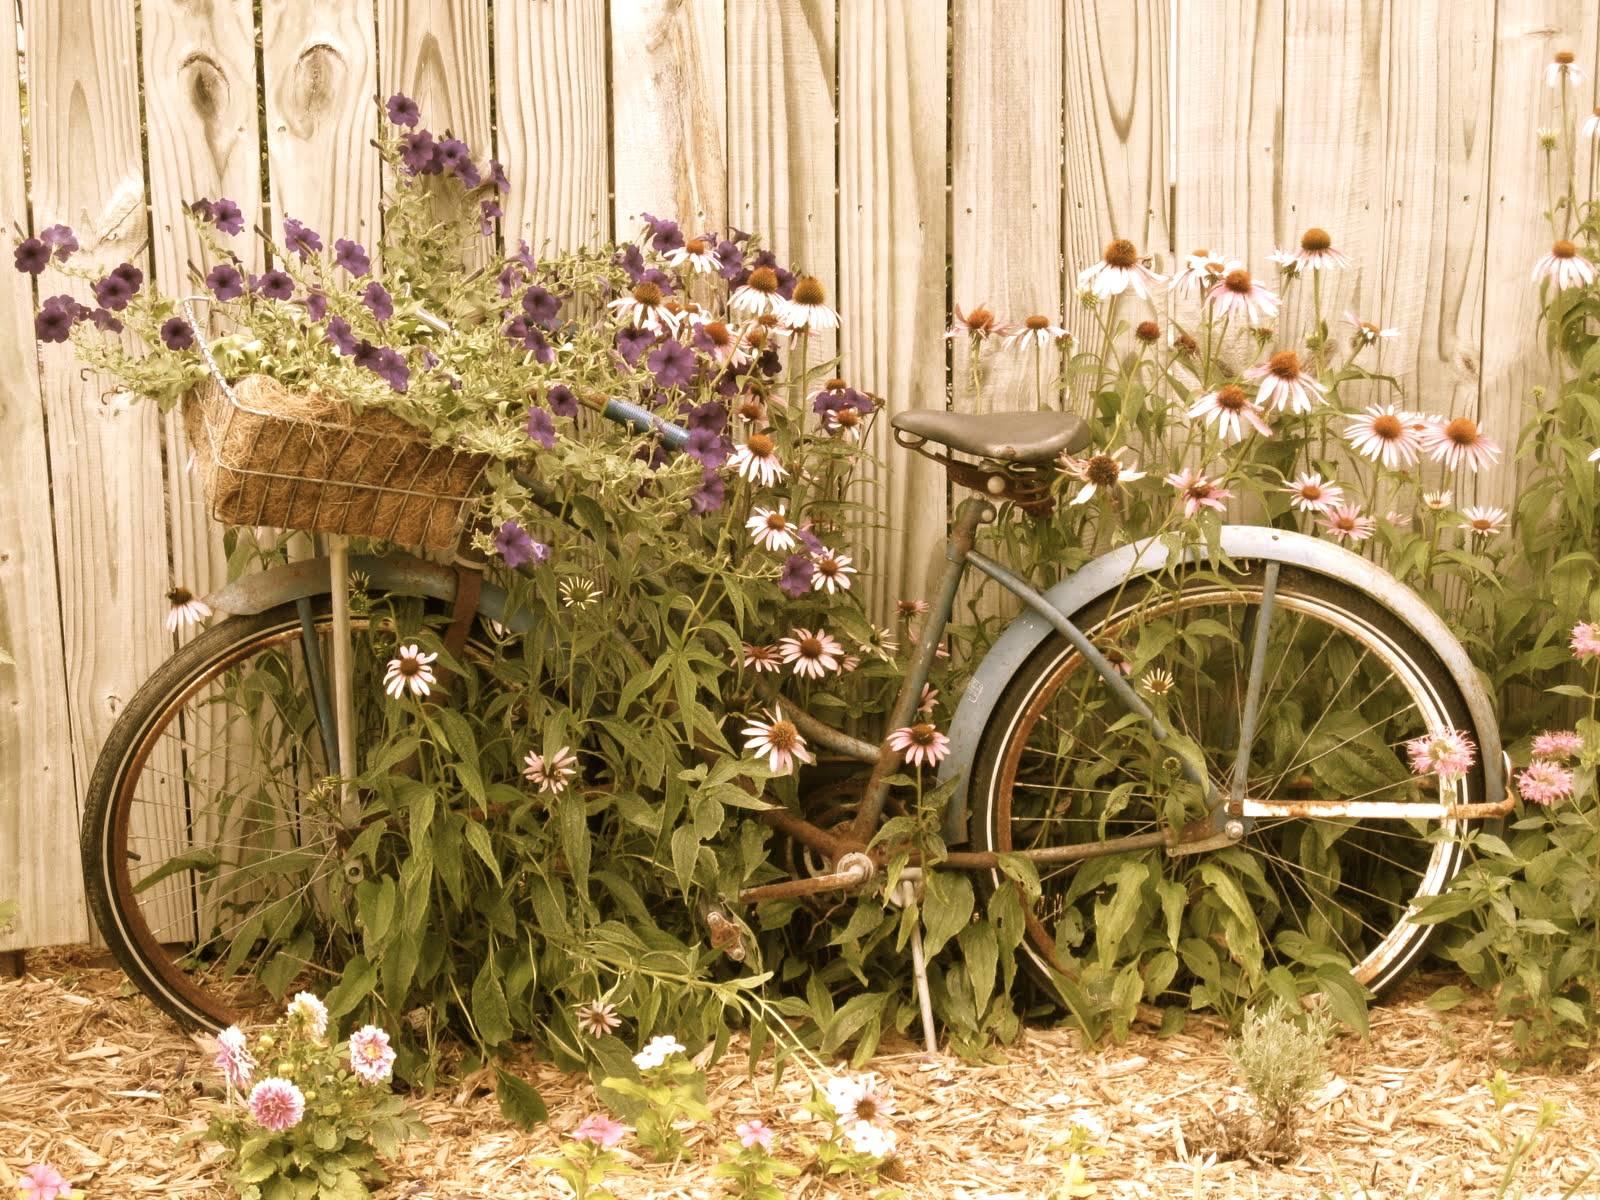 Поделки из старых автомобильных шин своими руками для дачи, сада, огорода — интересные пошаговые мастер-классы, фото идеи, советы